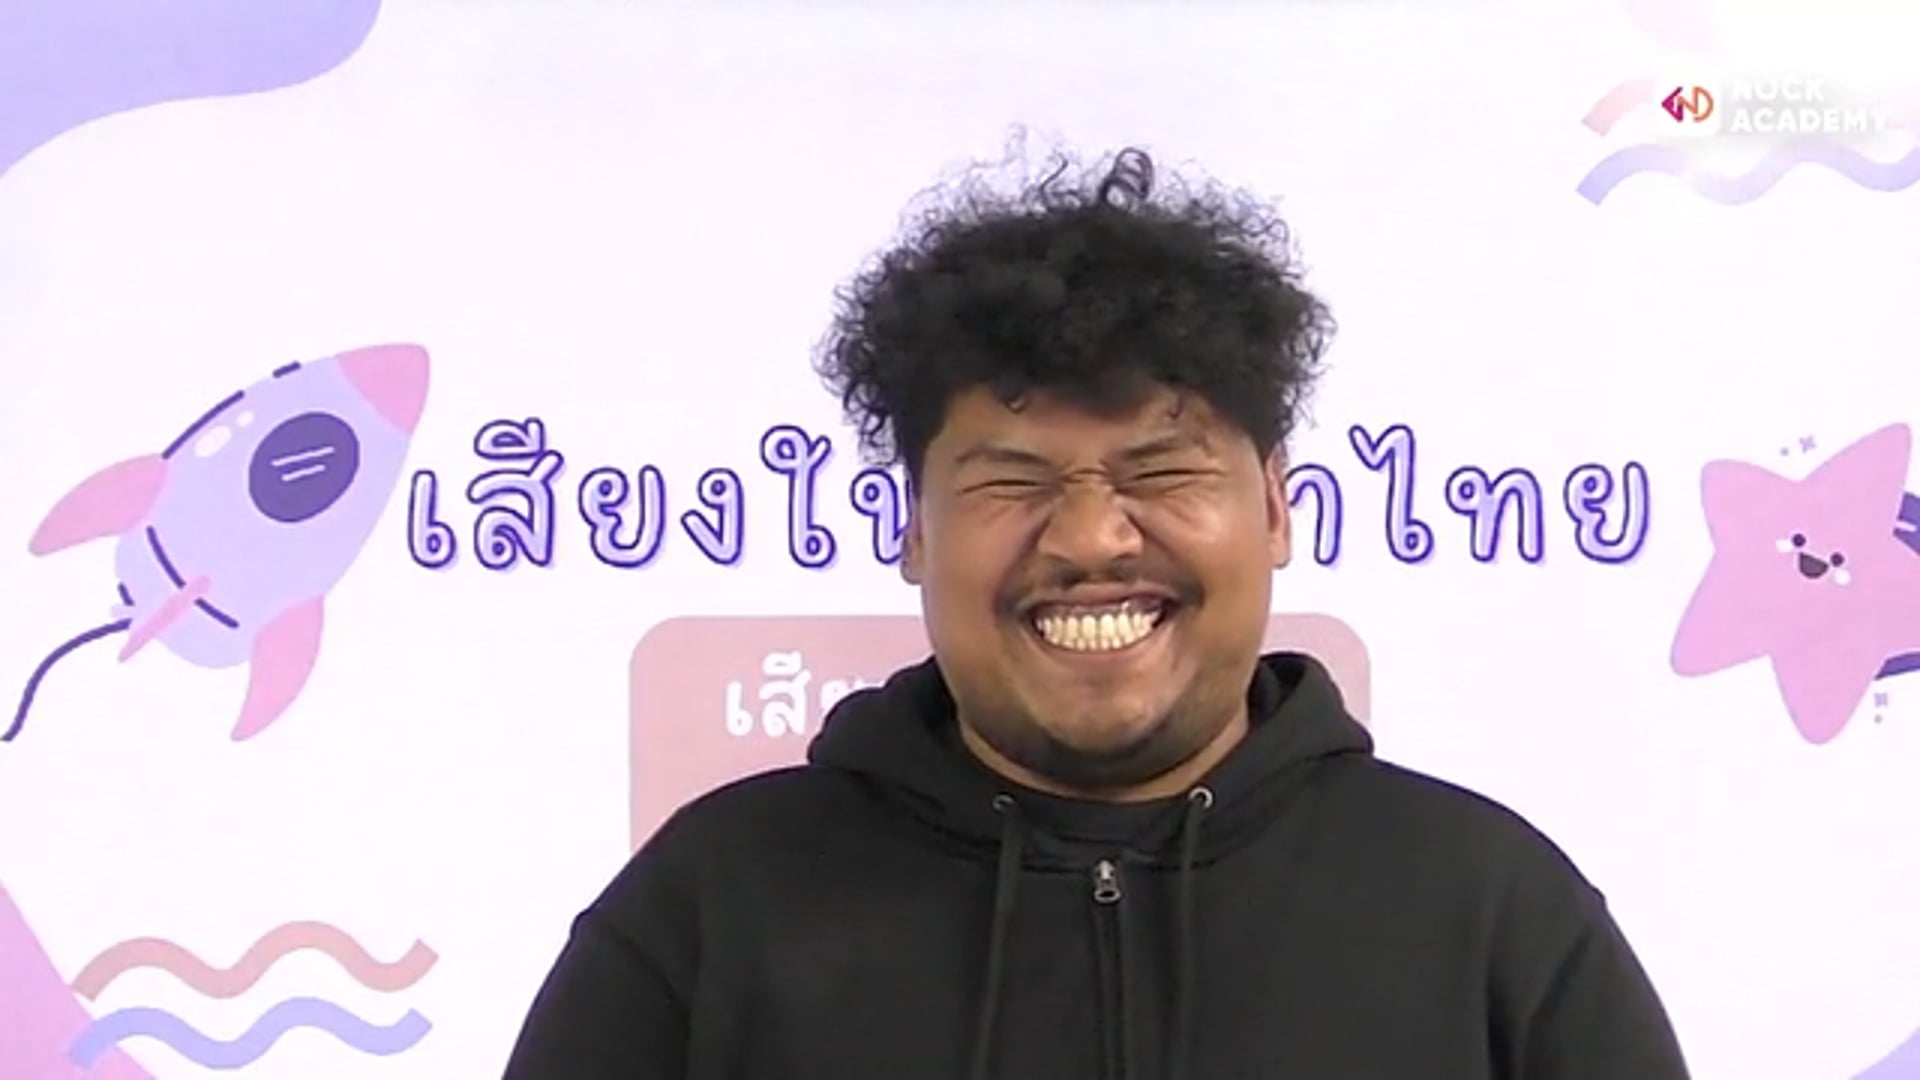 เสียงพยัญชนะและเสียงสระในภาษาไทย